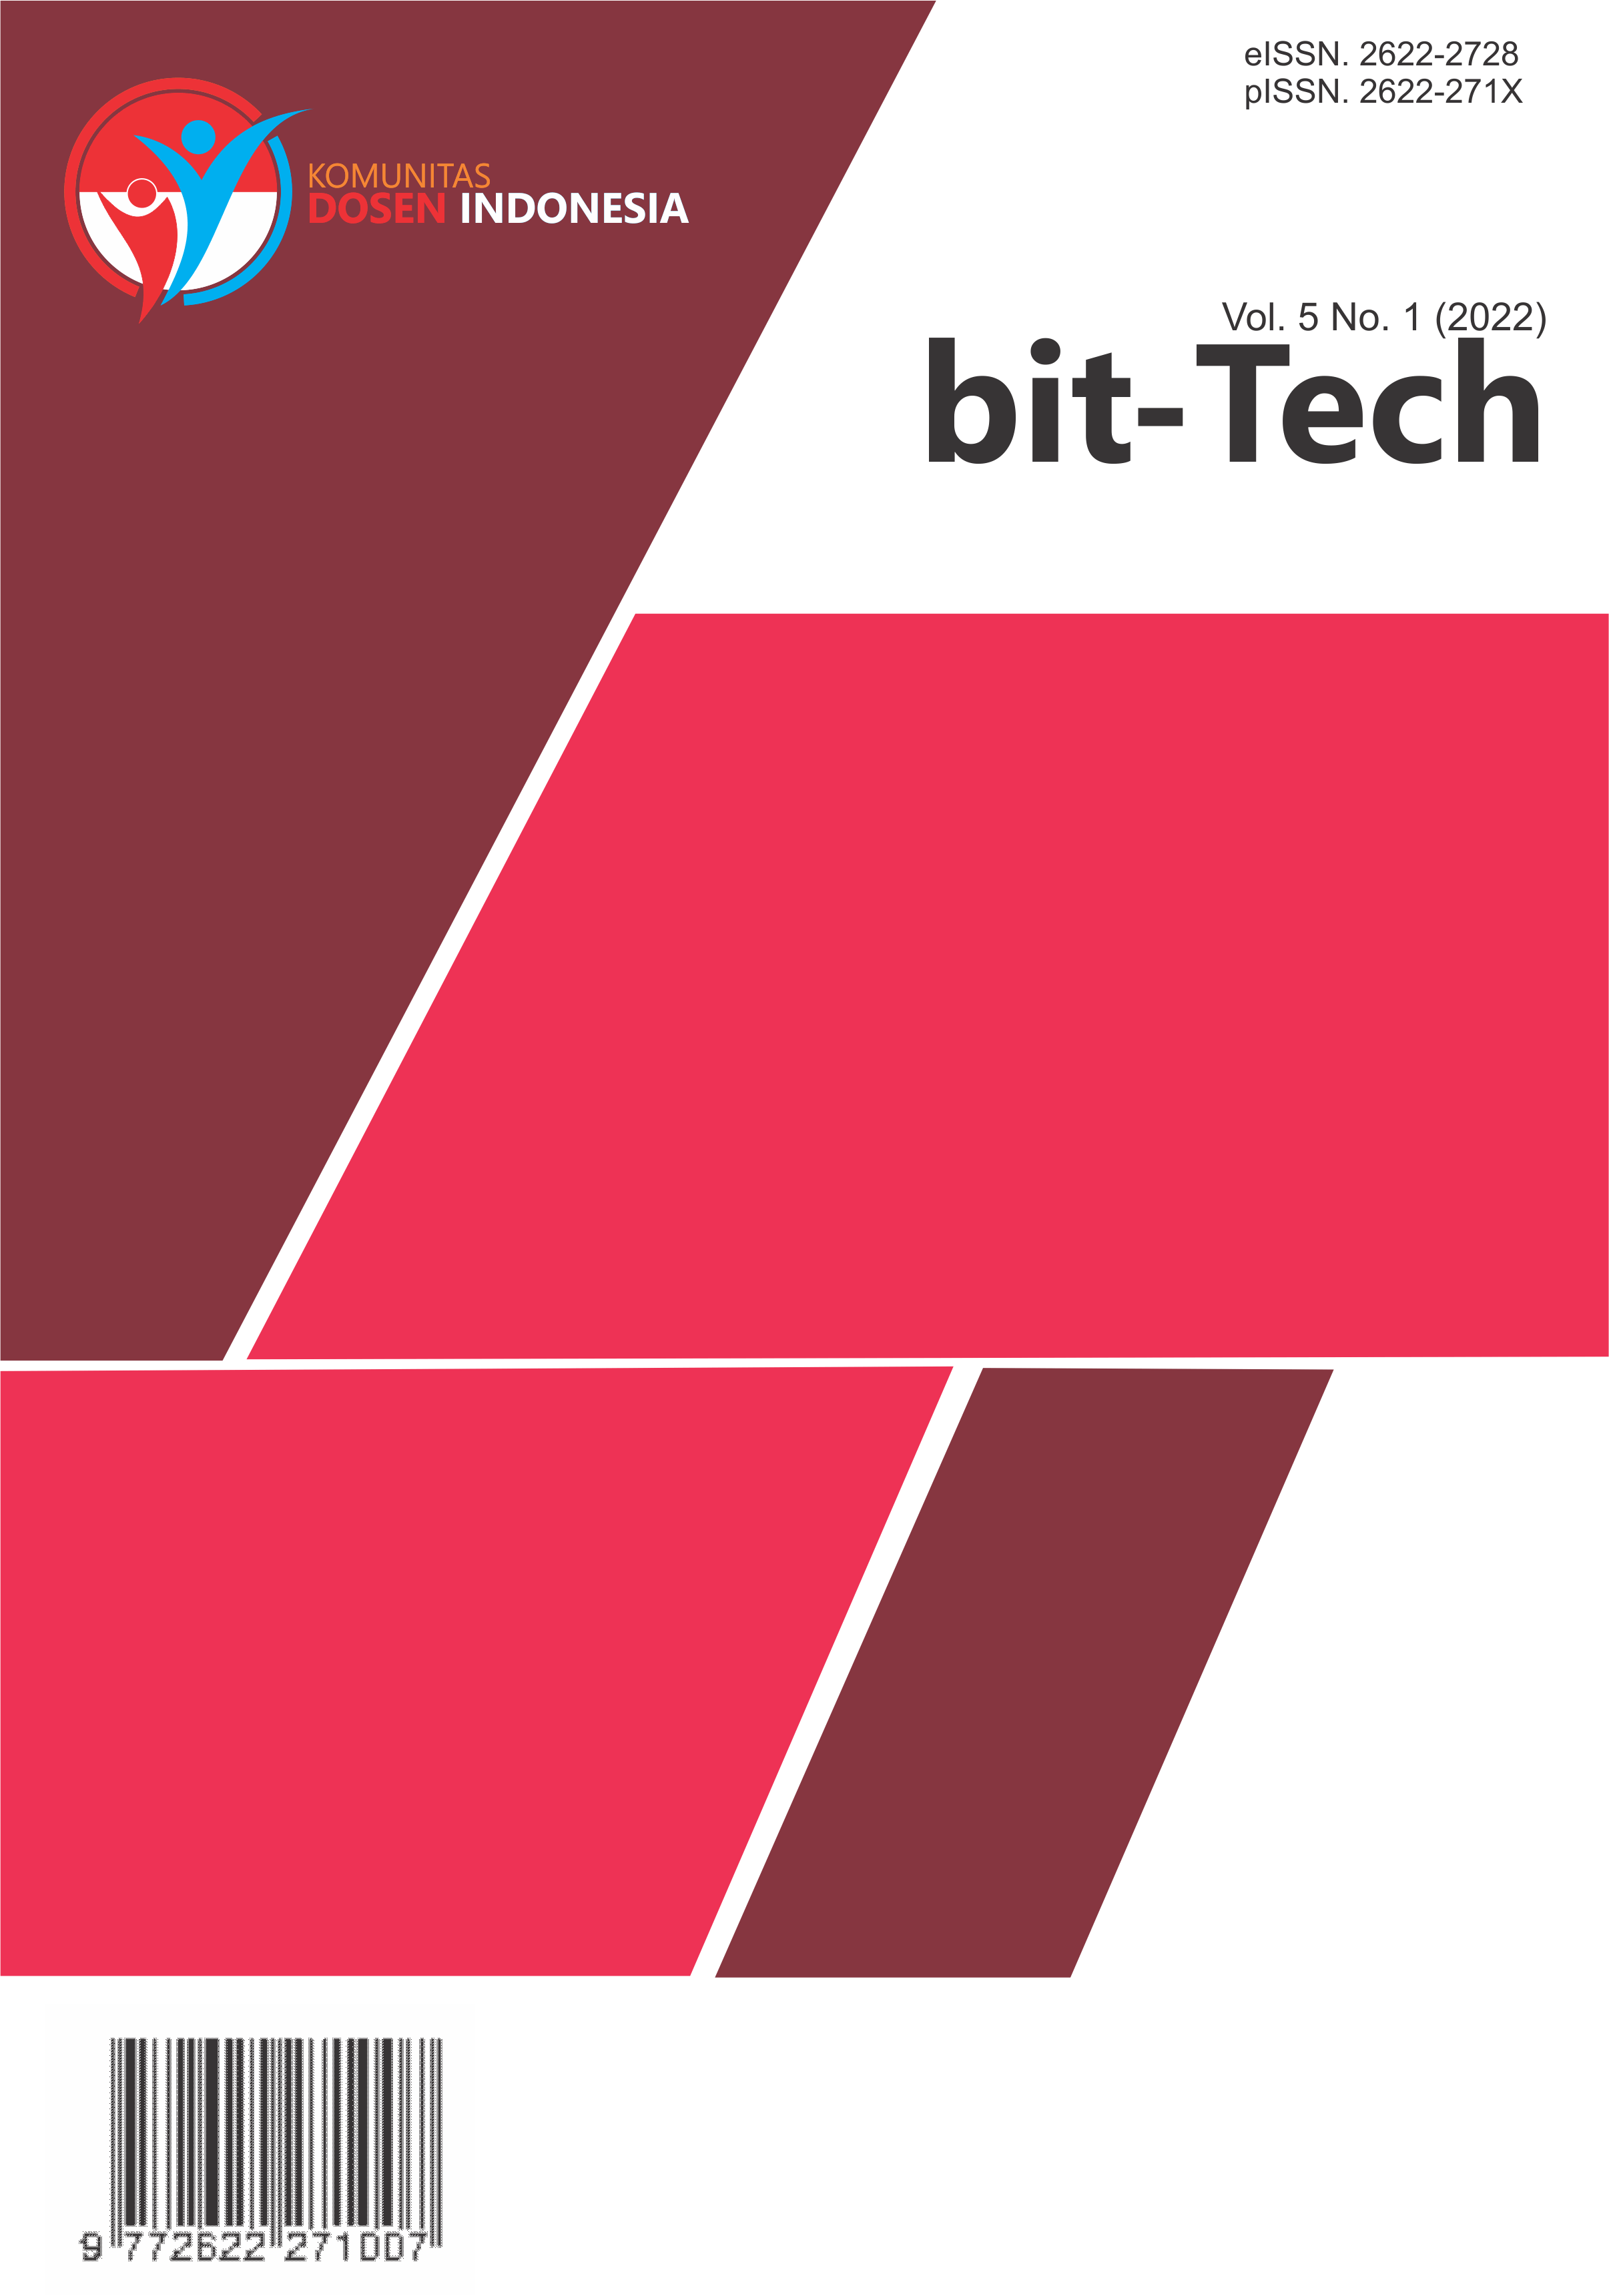 					View Vol. 5 No. 1 (2022): bit-Tech
				